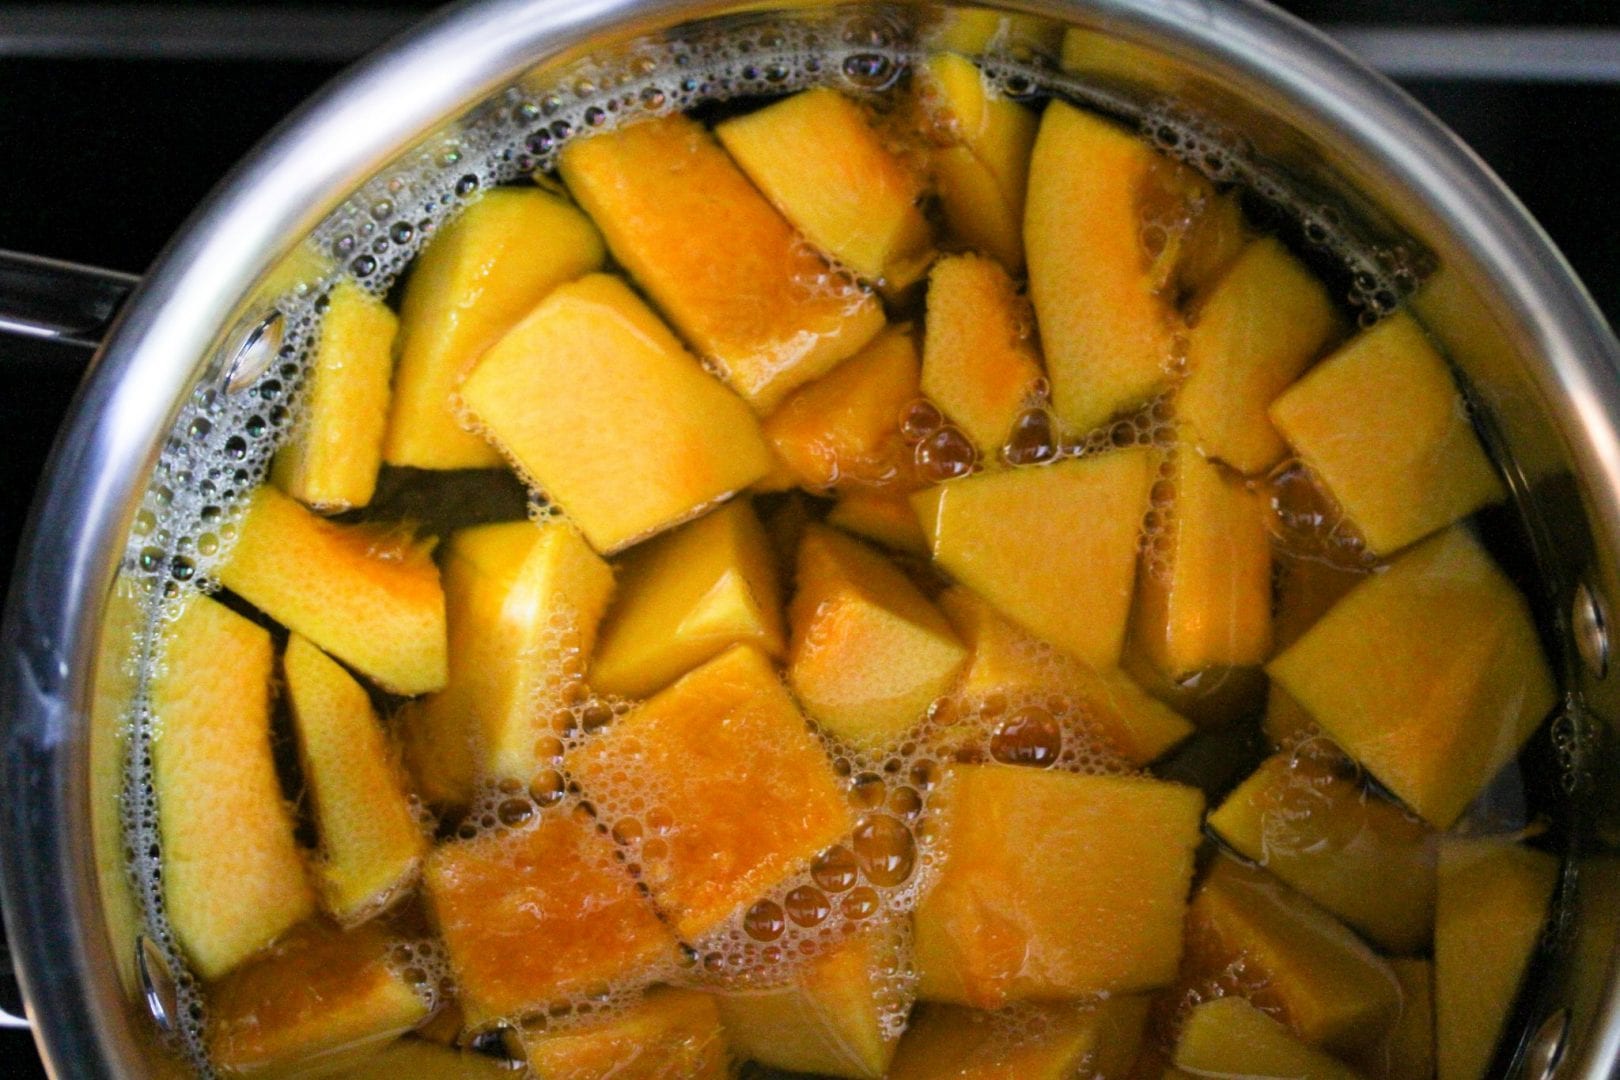 Pumpkin puree - first foods